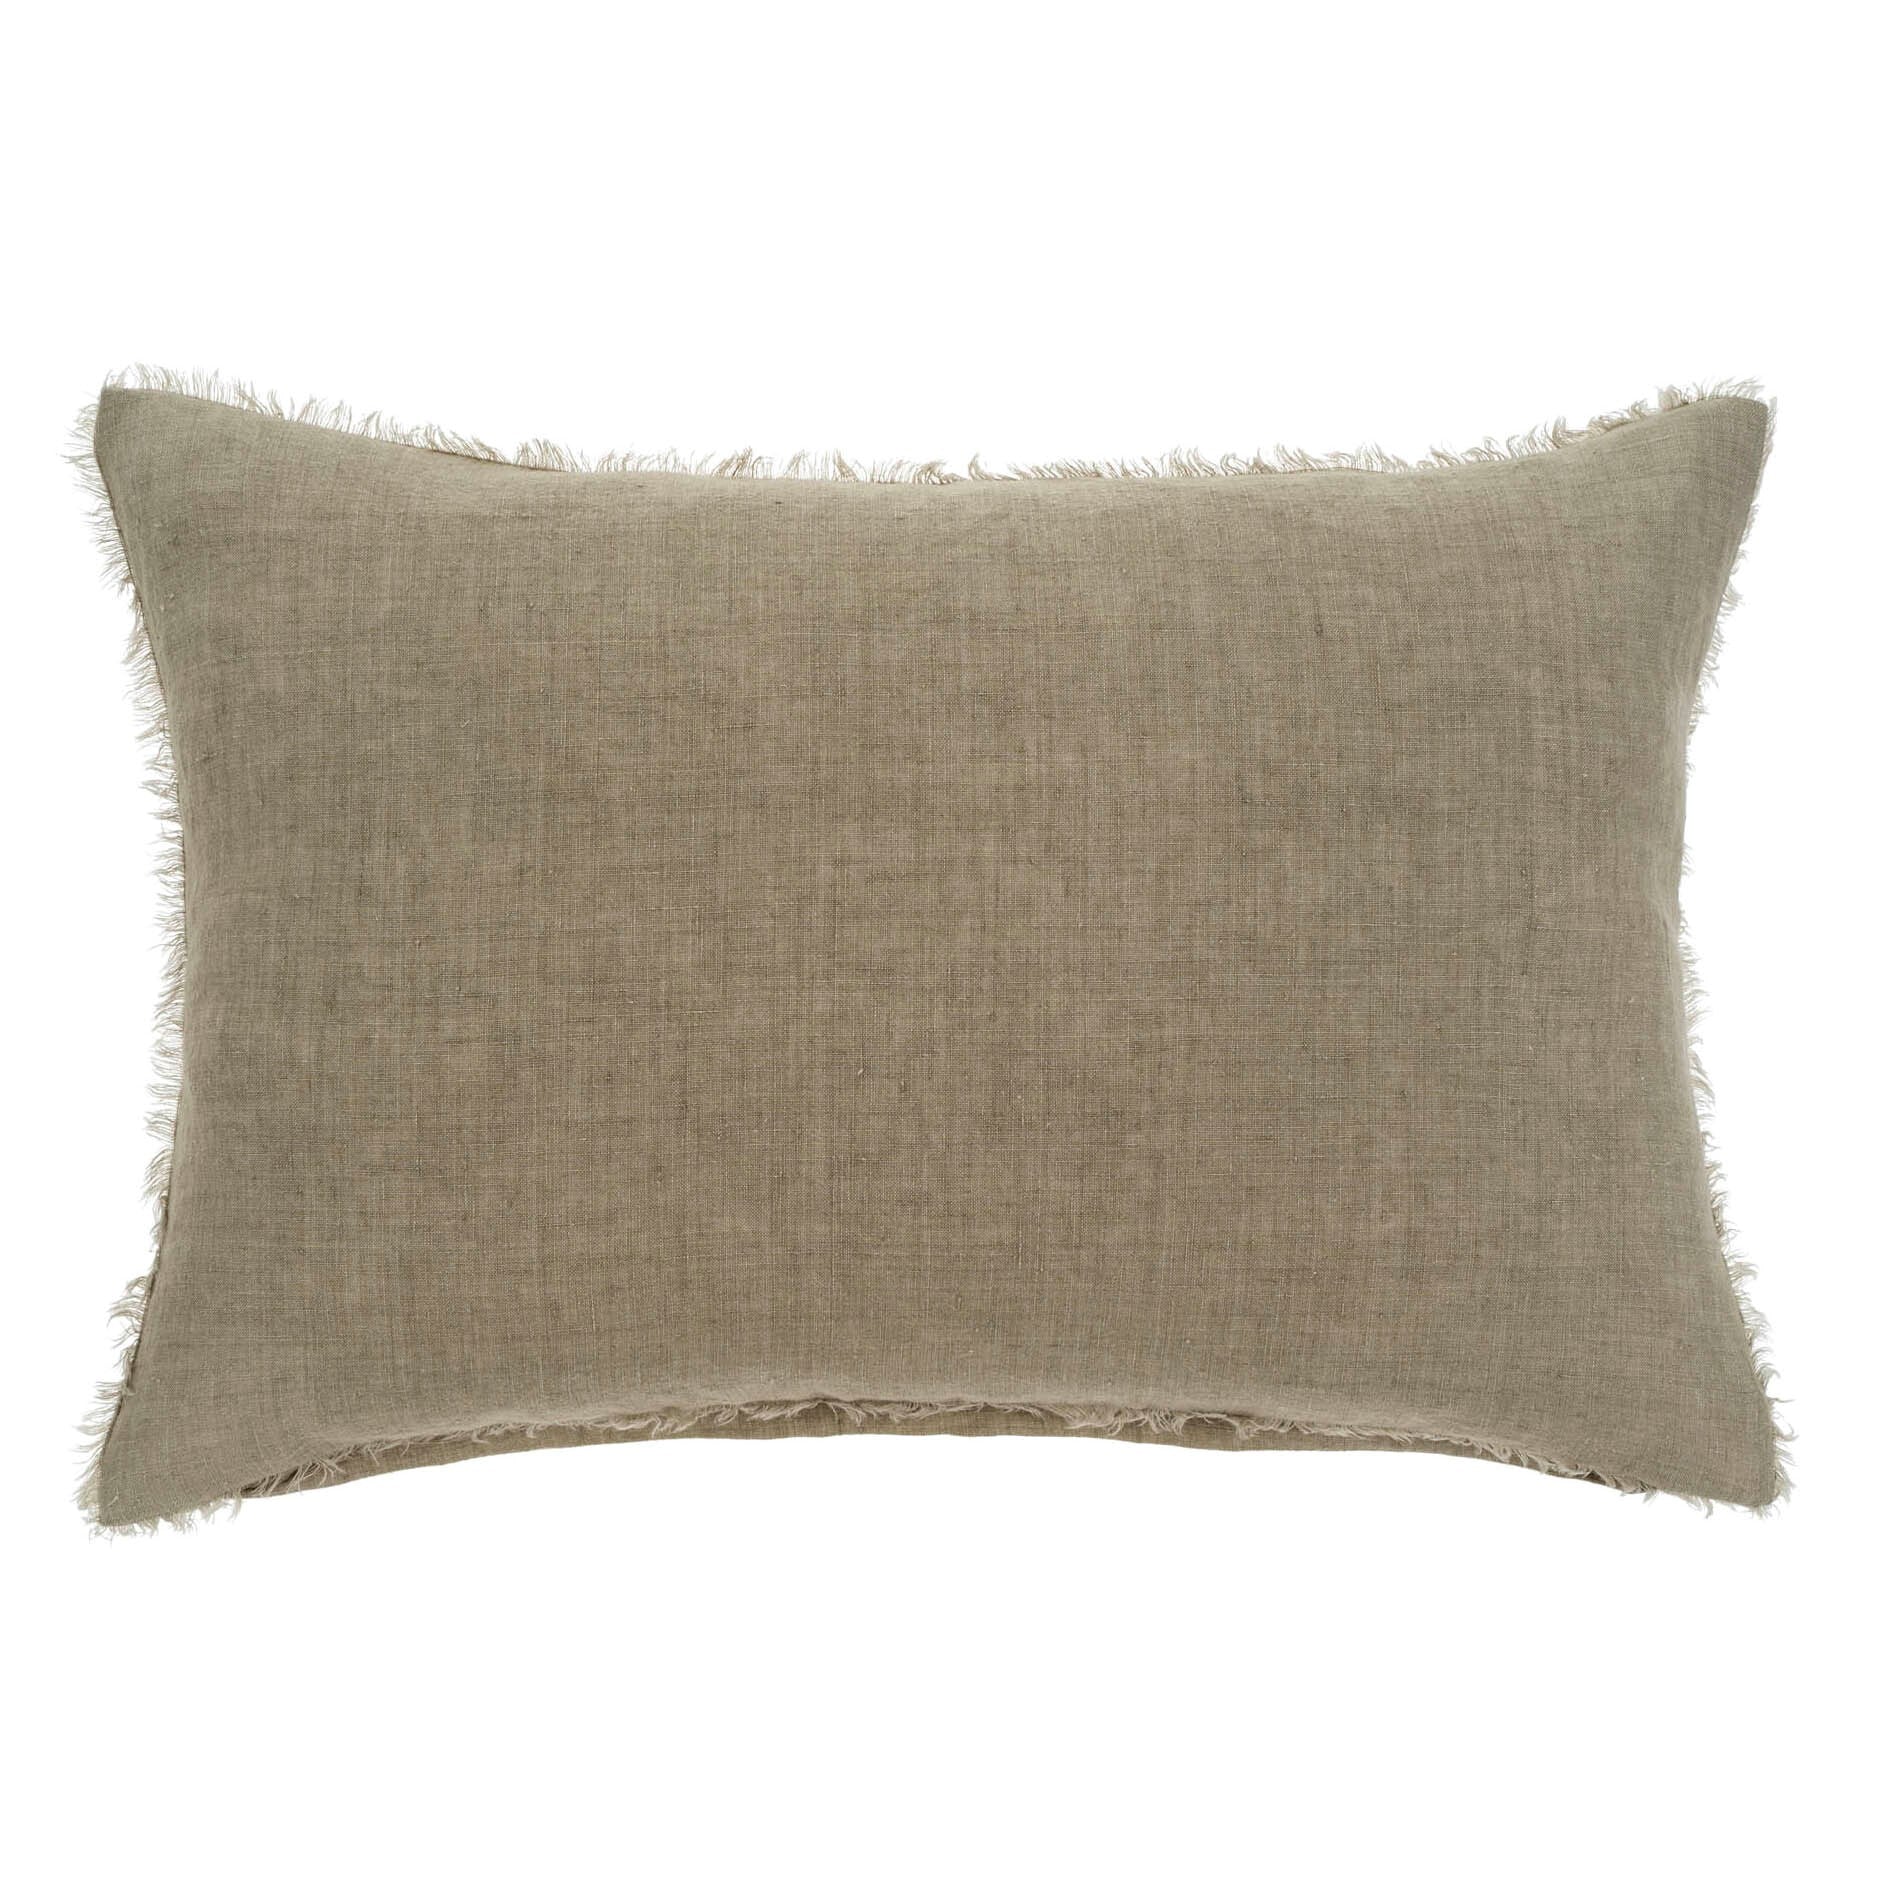 Indaba Lina Linen Cushion   1-1750  Sand